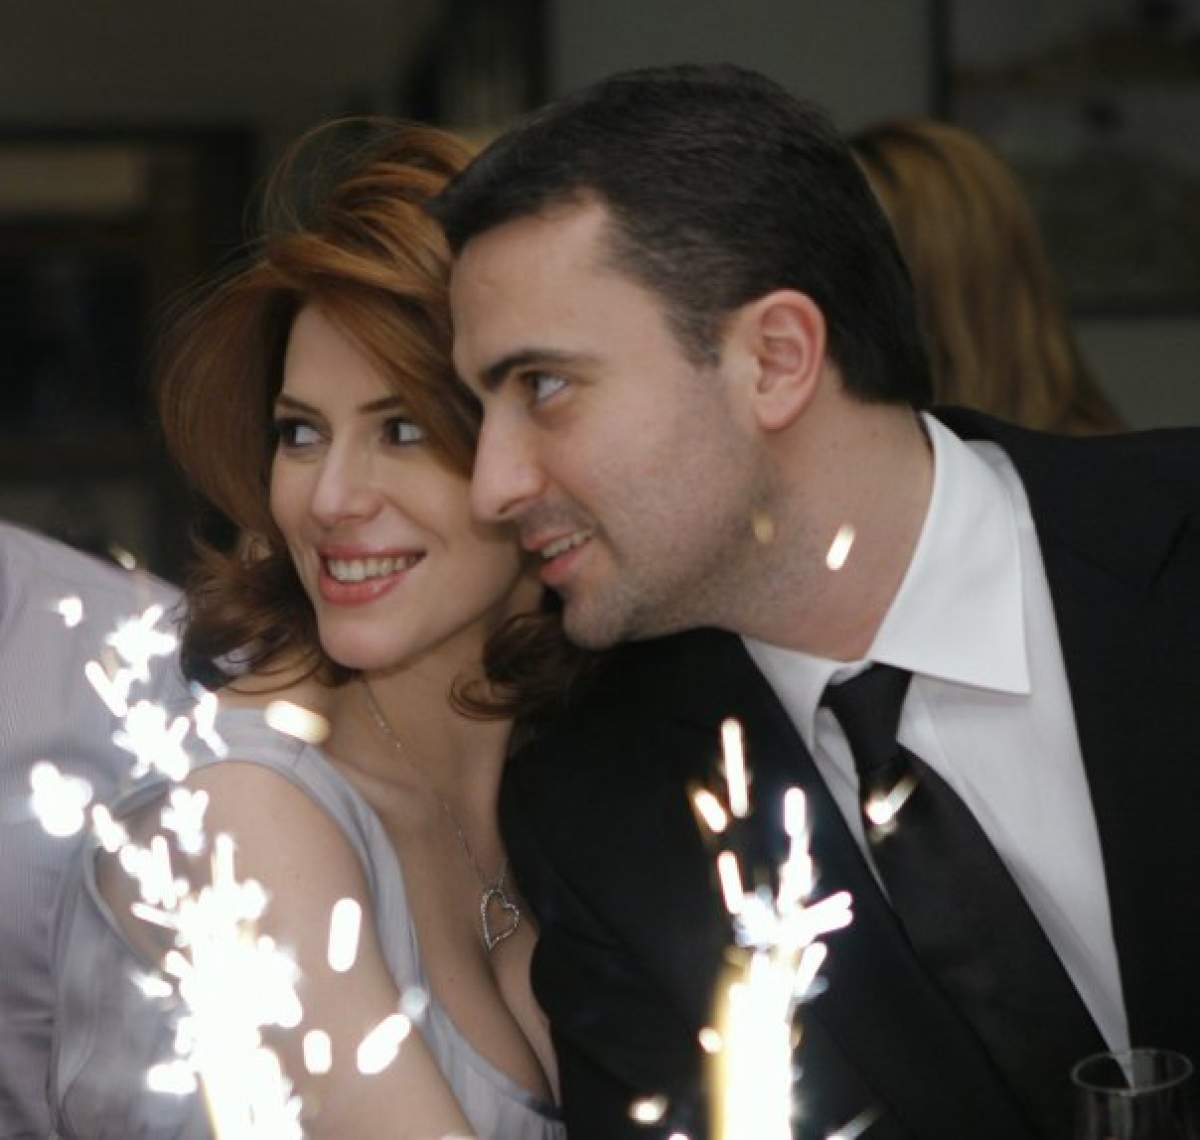 Fratele regretatei Cristina Țopescu nu poate divorța din cauza stării de urgență! Se separă a doua oară de aceeași femeie